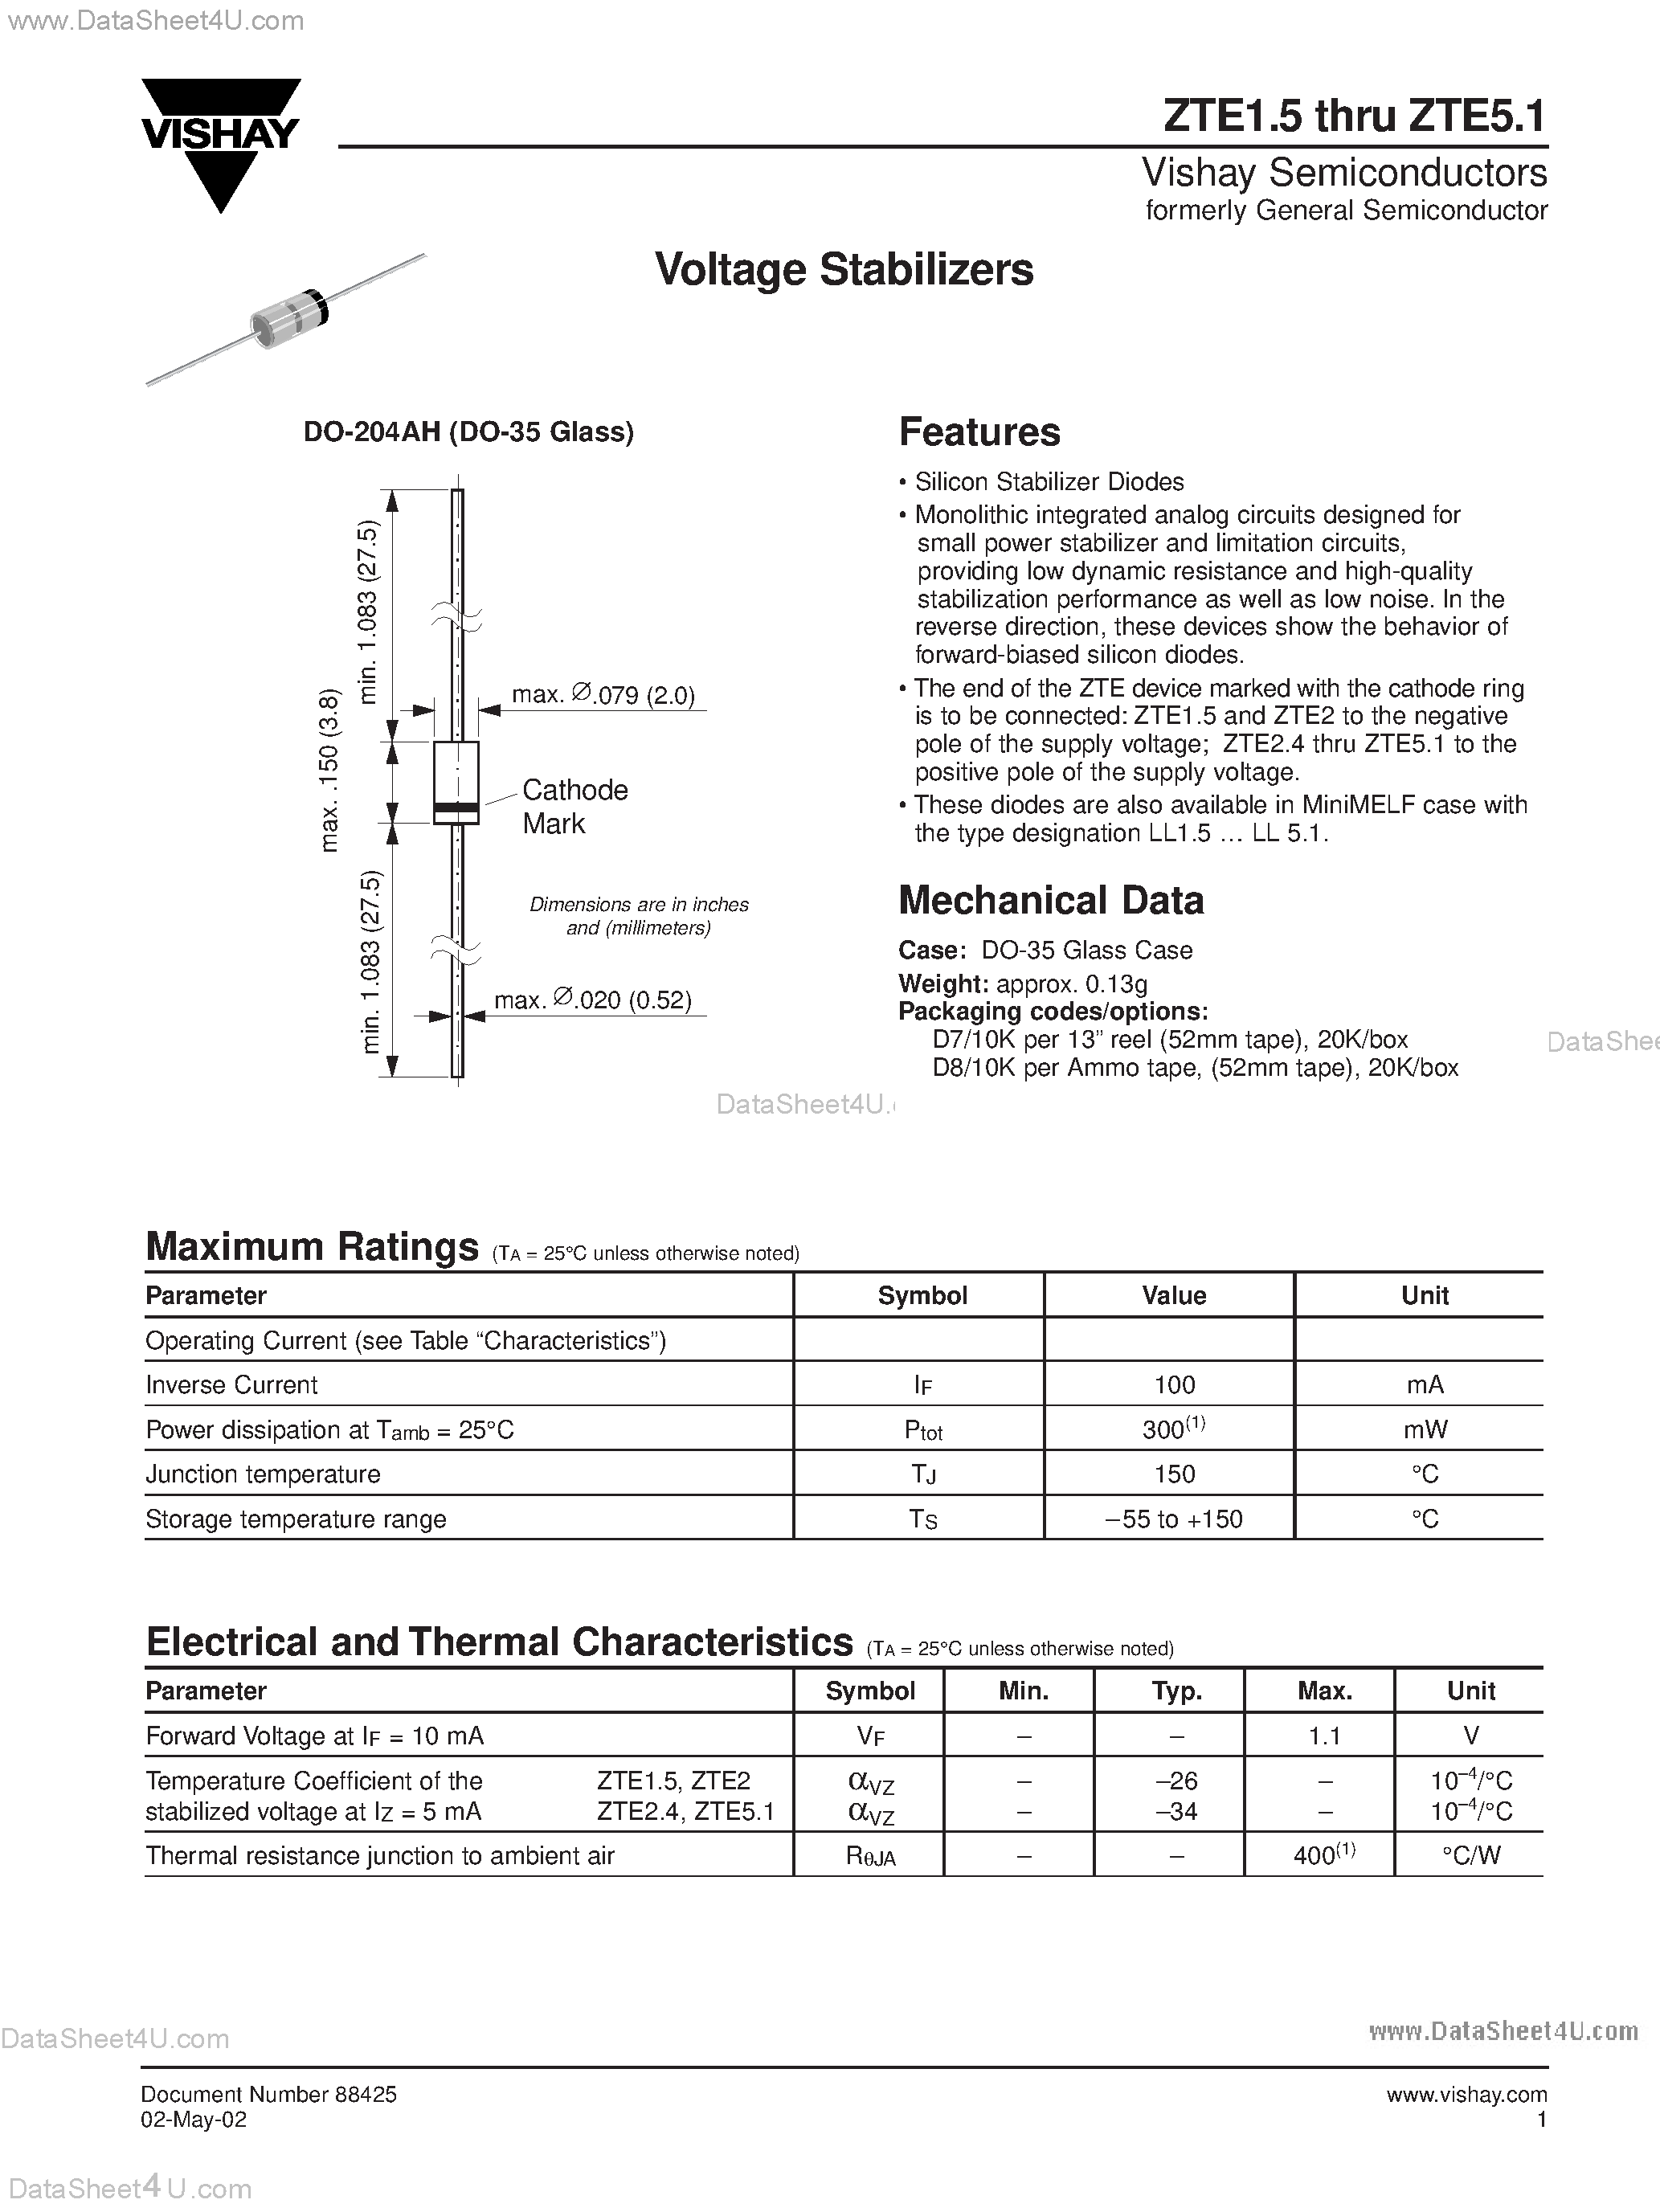 Datasheet ZTE3 - (ZTE31.5 - ZTE5.1) Voltage Stabilizers page 1